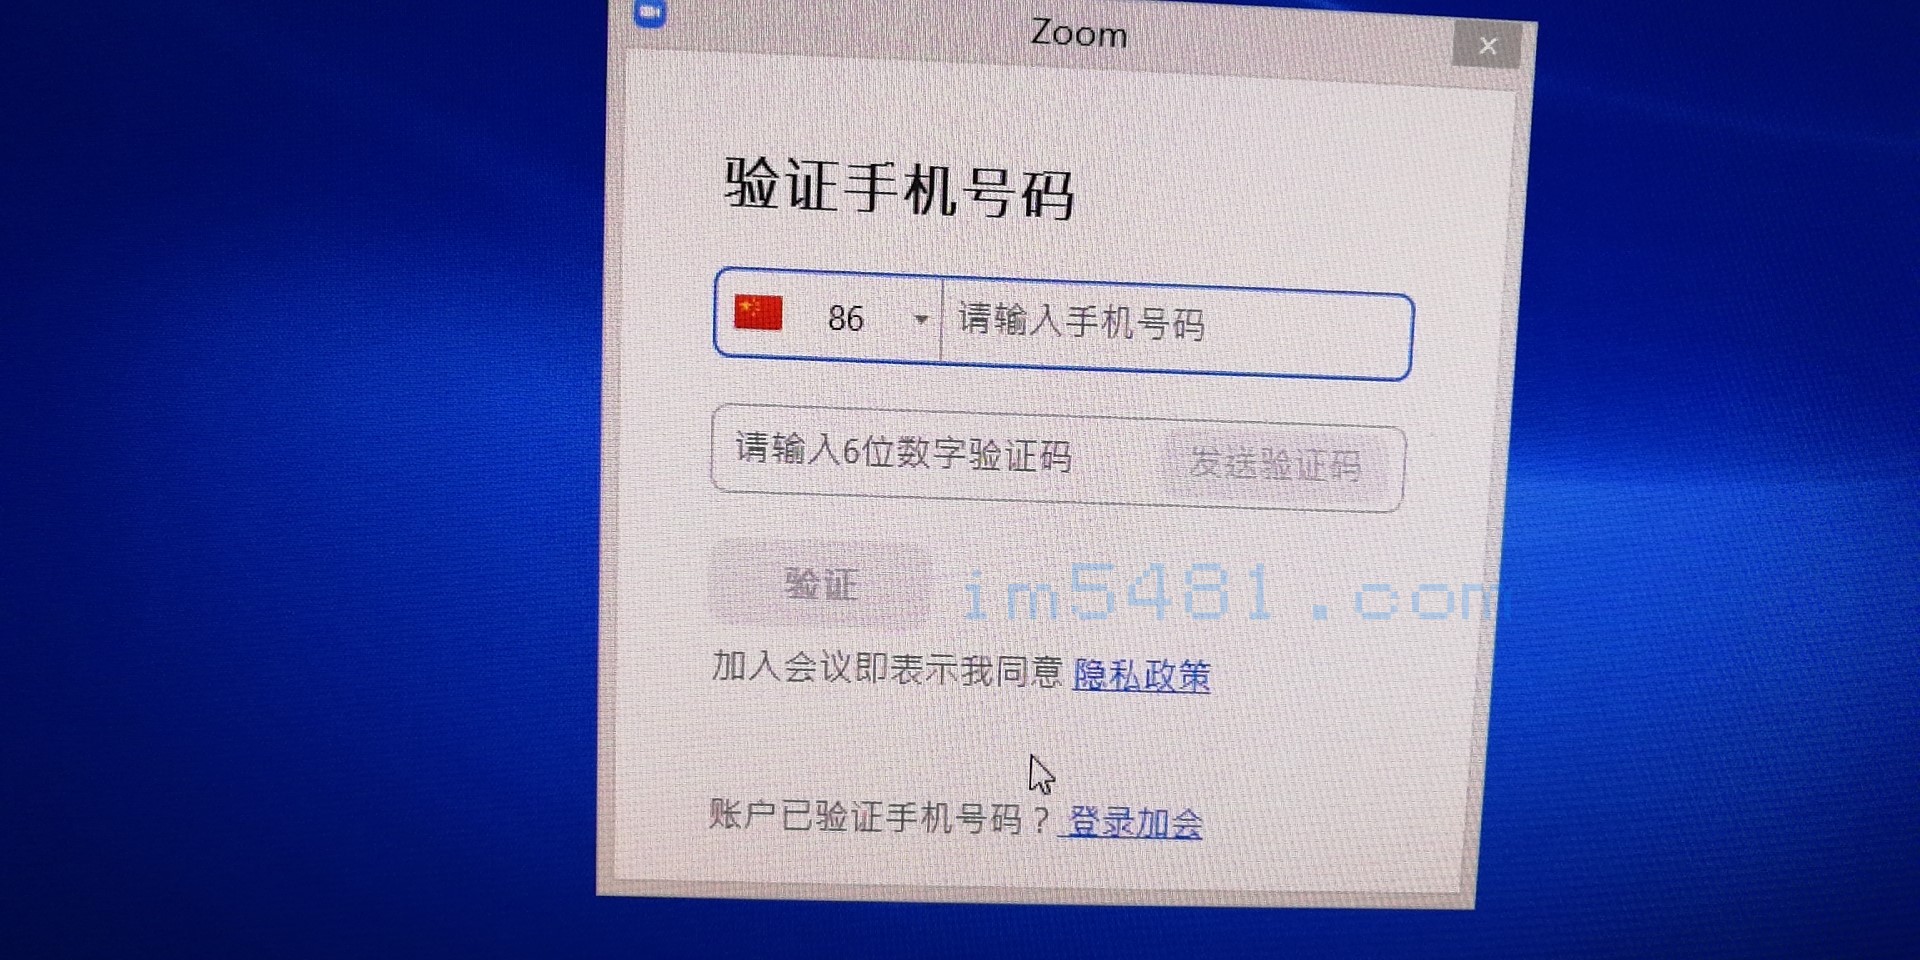 2019-11-17 中國地區要使用zoom需要手機驗證通過後才可以使用